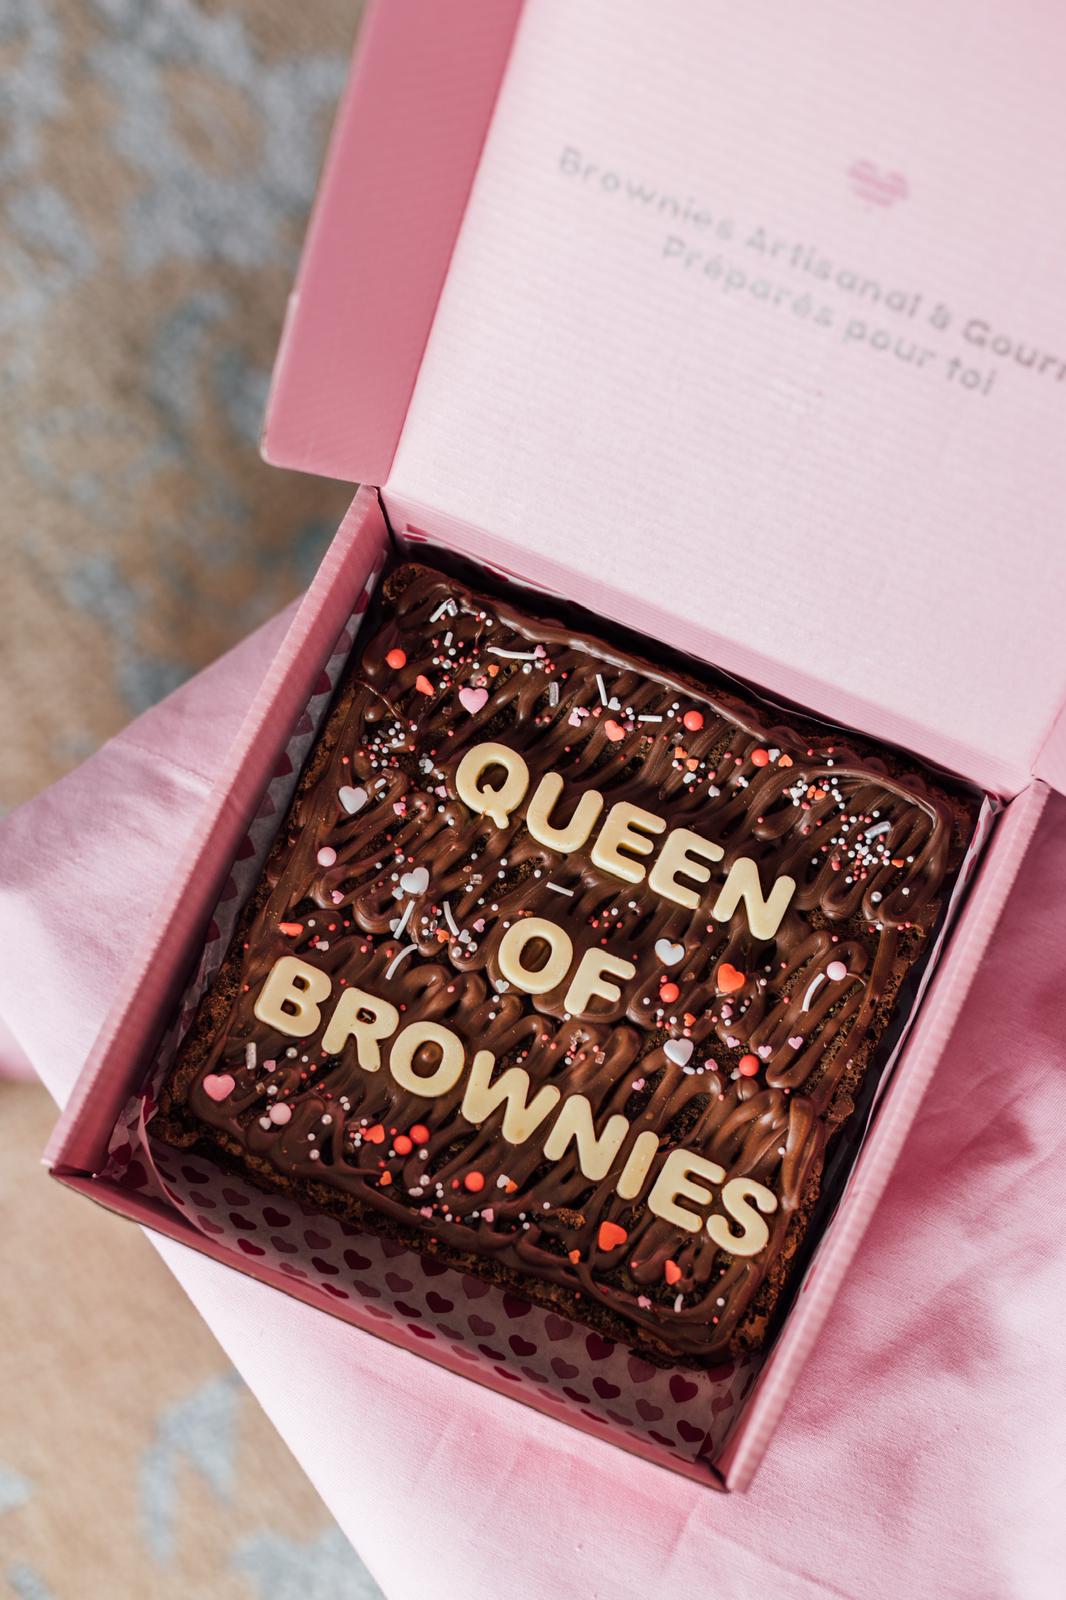 La Queen of Brownies